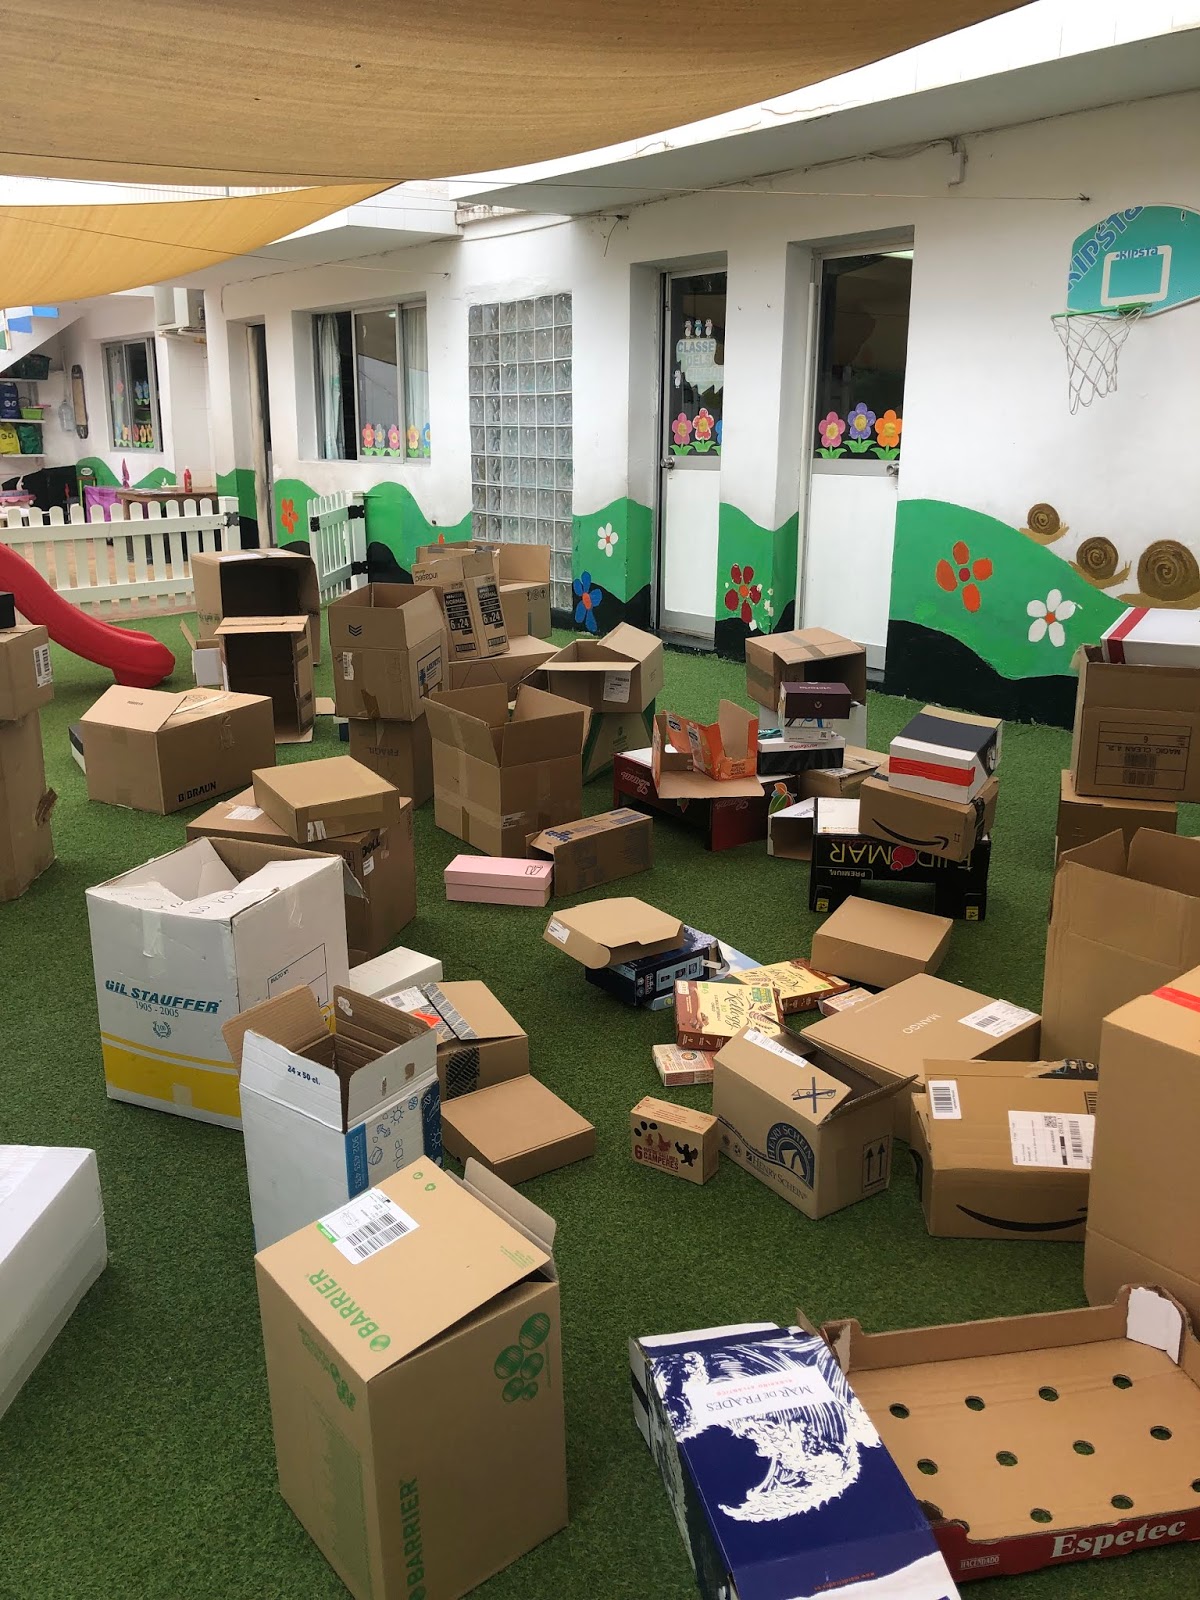 Centro de Educación Infantil Pinocho: de cajas de cartón (2-3 años) / Taller de caixes de cartó (2-3 anys)